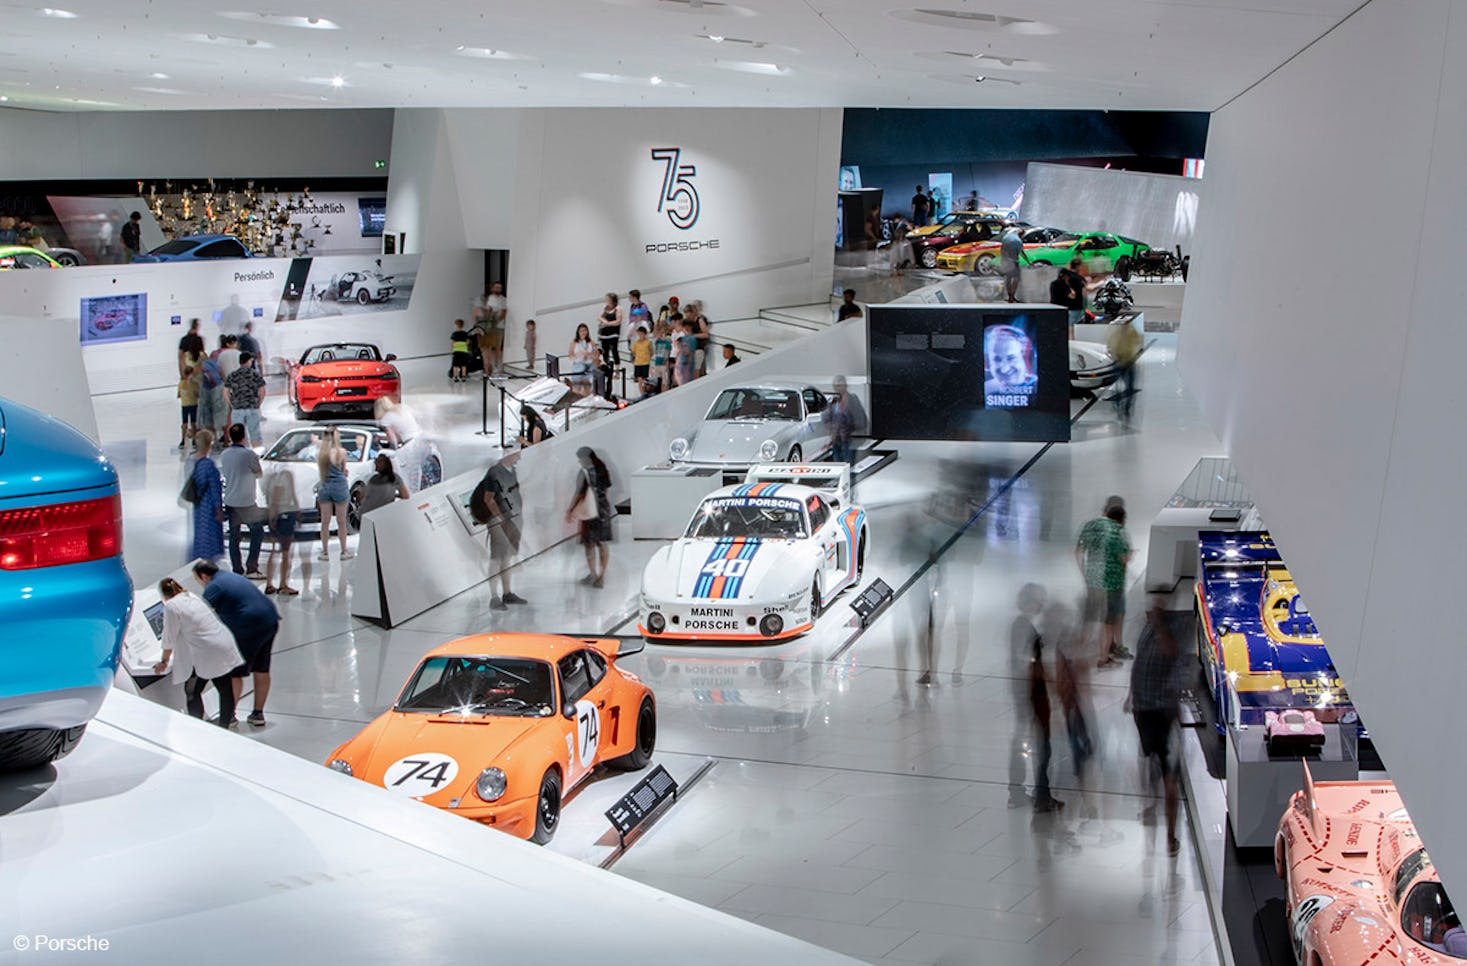 Städtetrip Stuttgart mit Porsche Museum für 2 (2 Nächte)